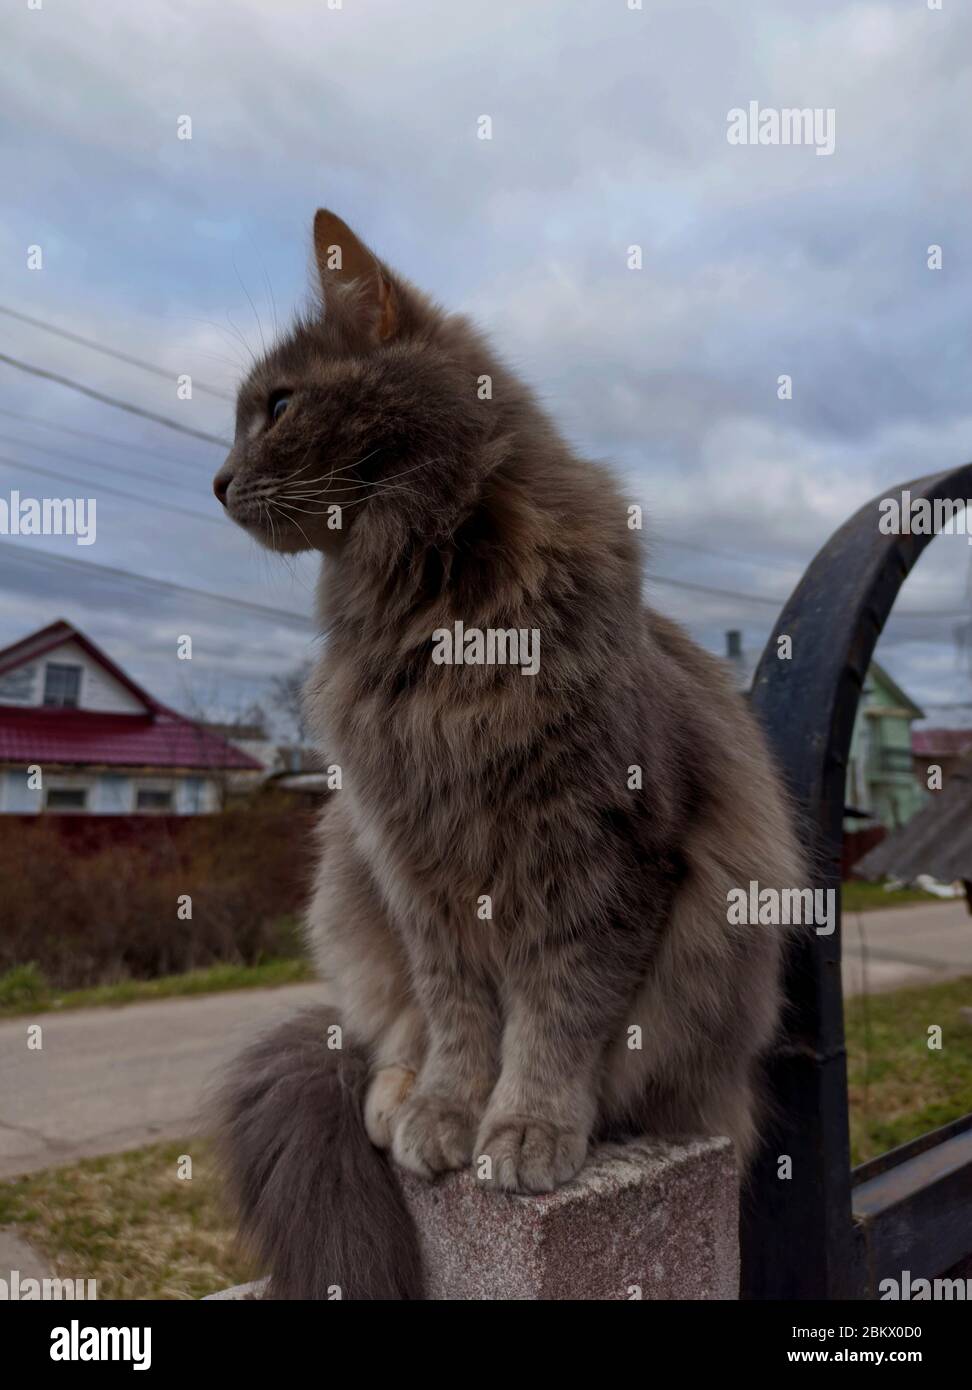 Un gato pubred se sienta en un banco en una casa de campo, mascota esponjosa, ojos de gato, libertad para el animal, banner, primer plano, copiar espacio, mamífero. Foto de stock